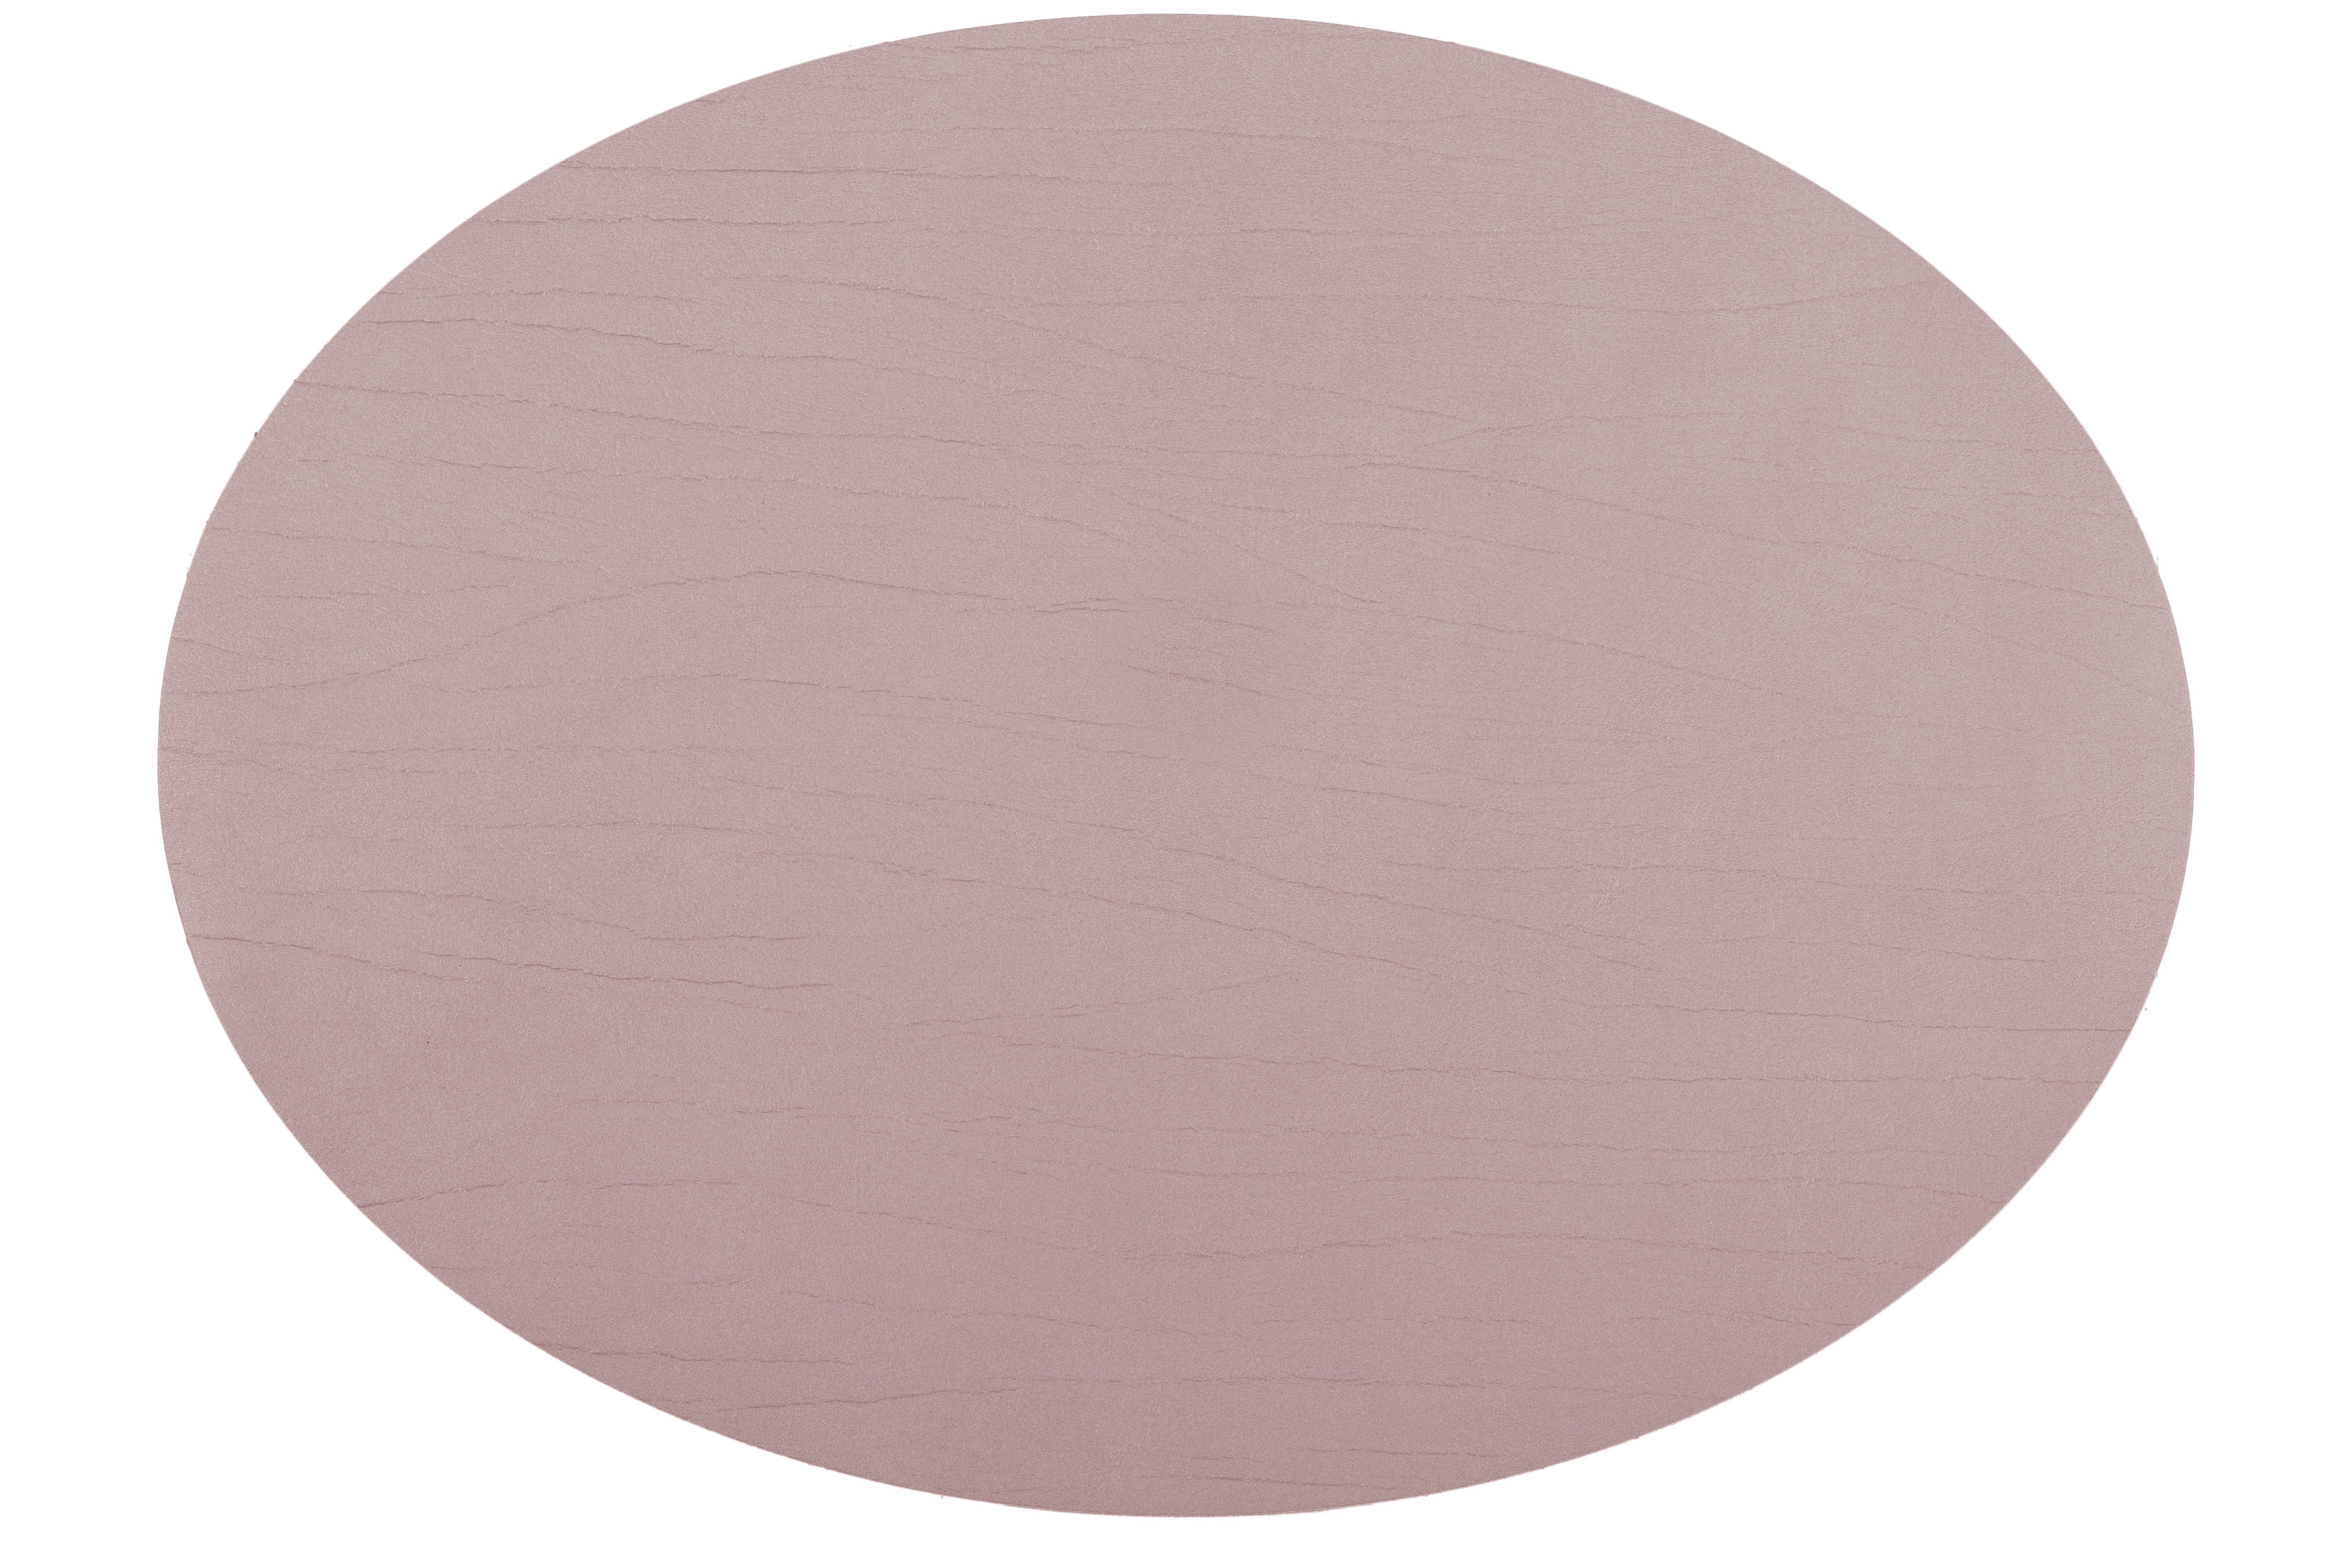 Titan placemat oval, 33x45cm, mauve double sided